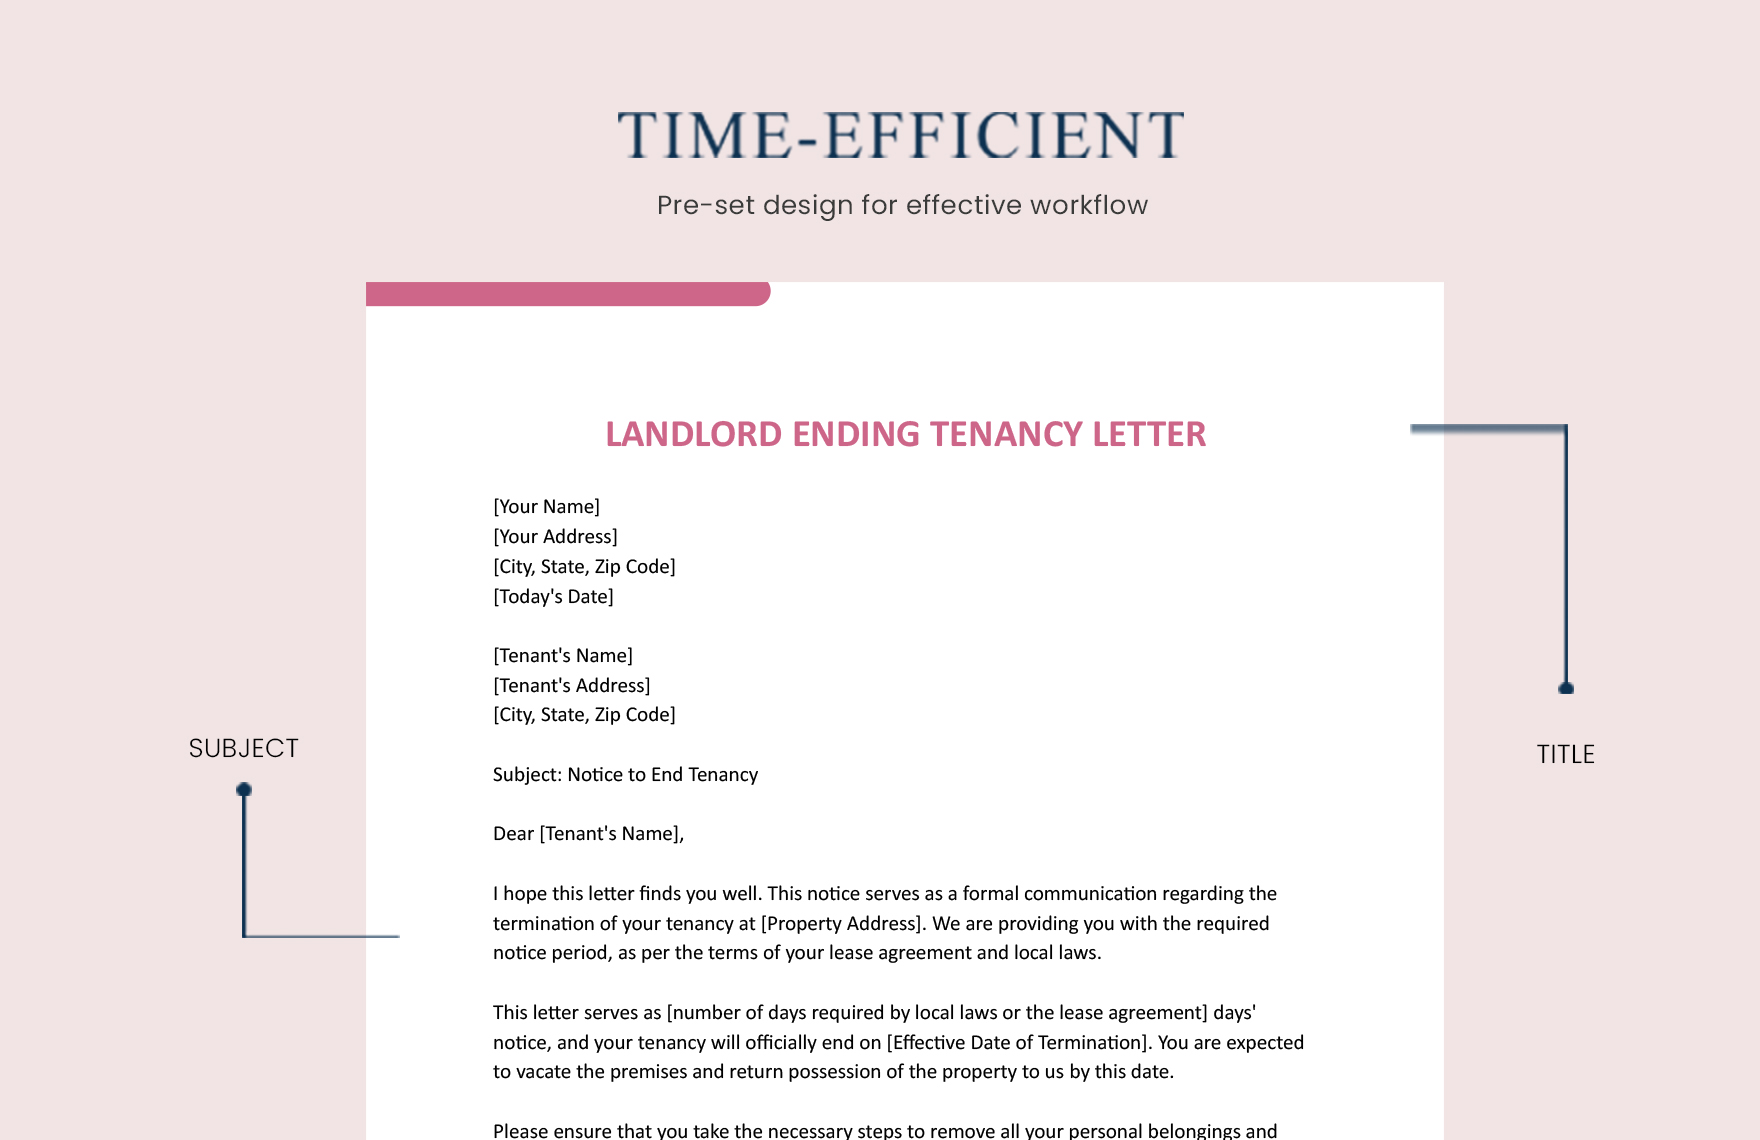 Landlord Ending Tenancy Letter